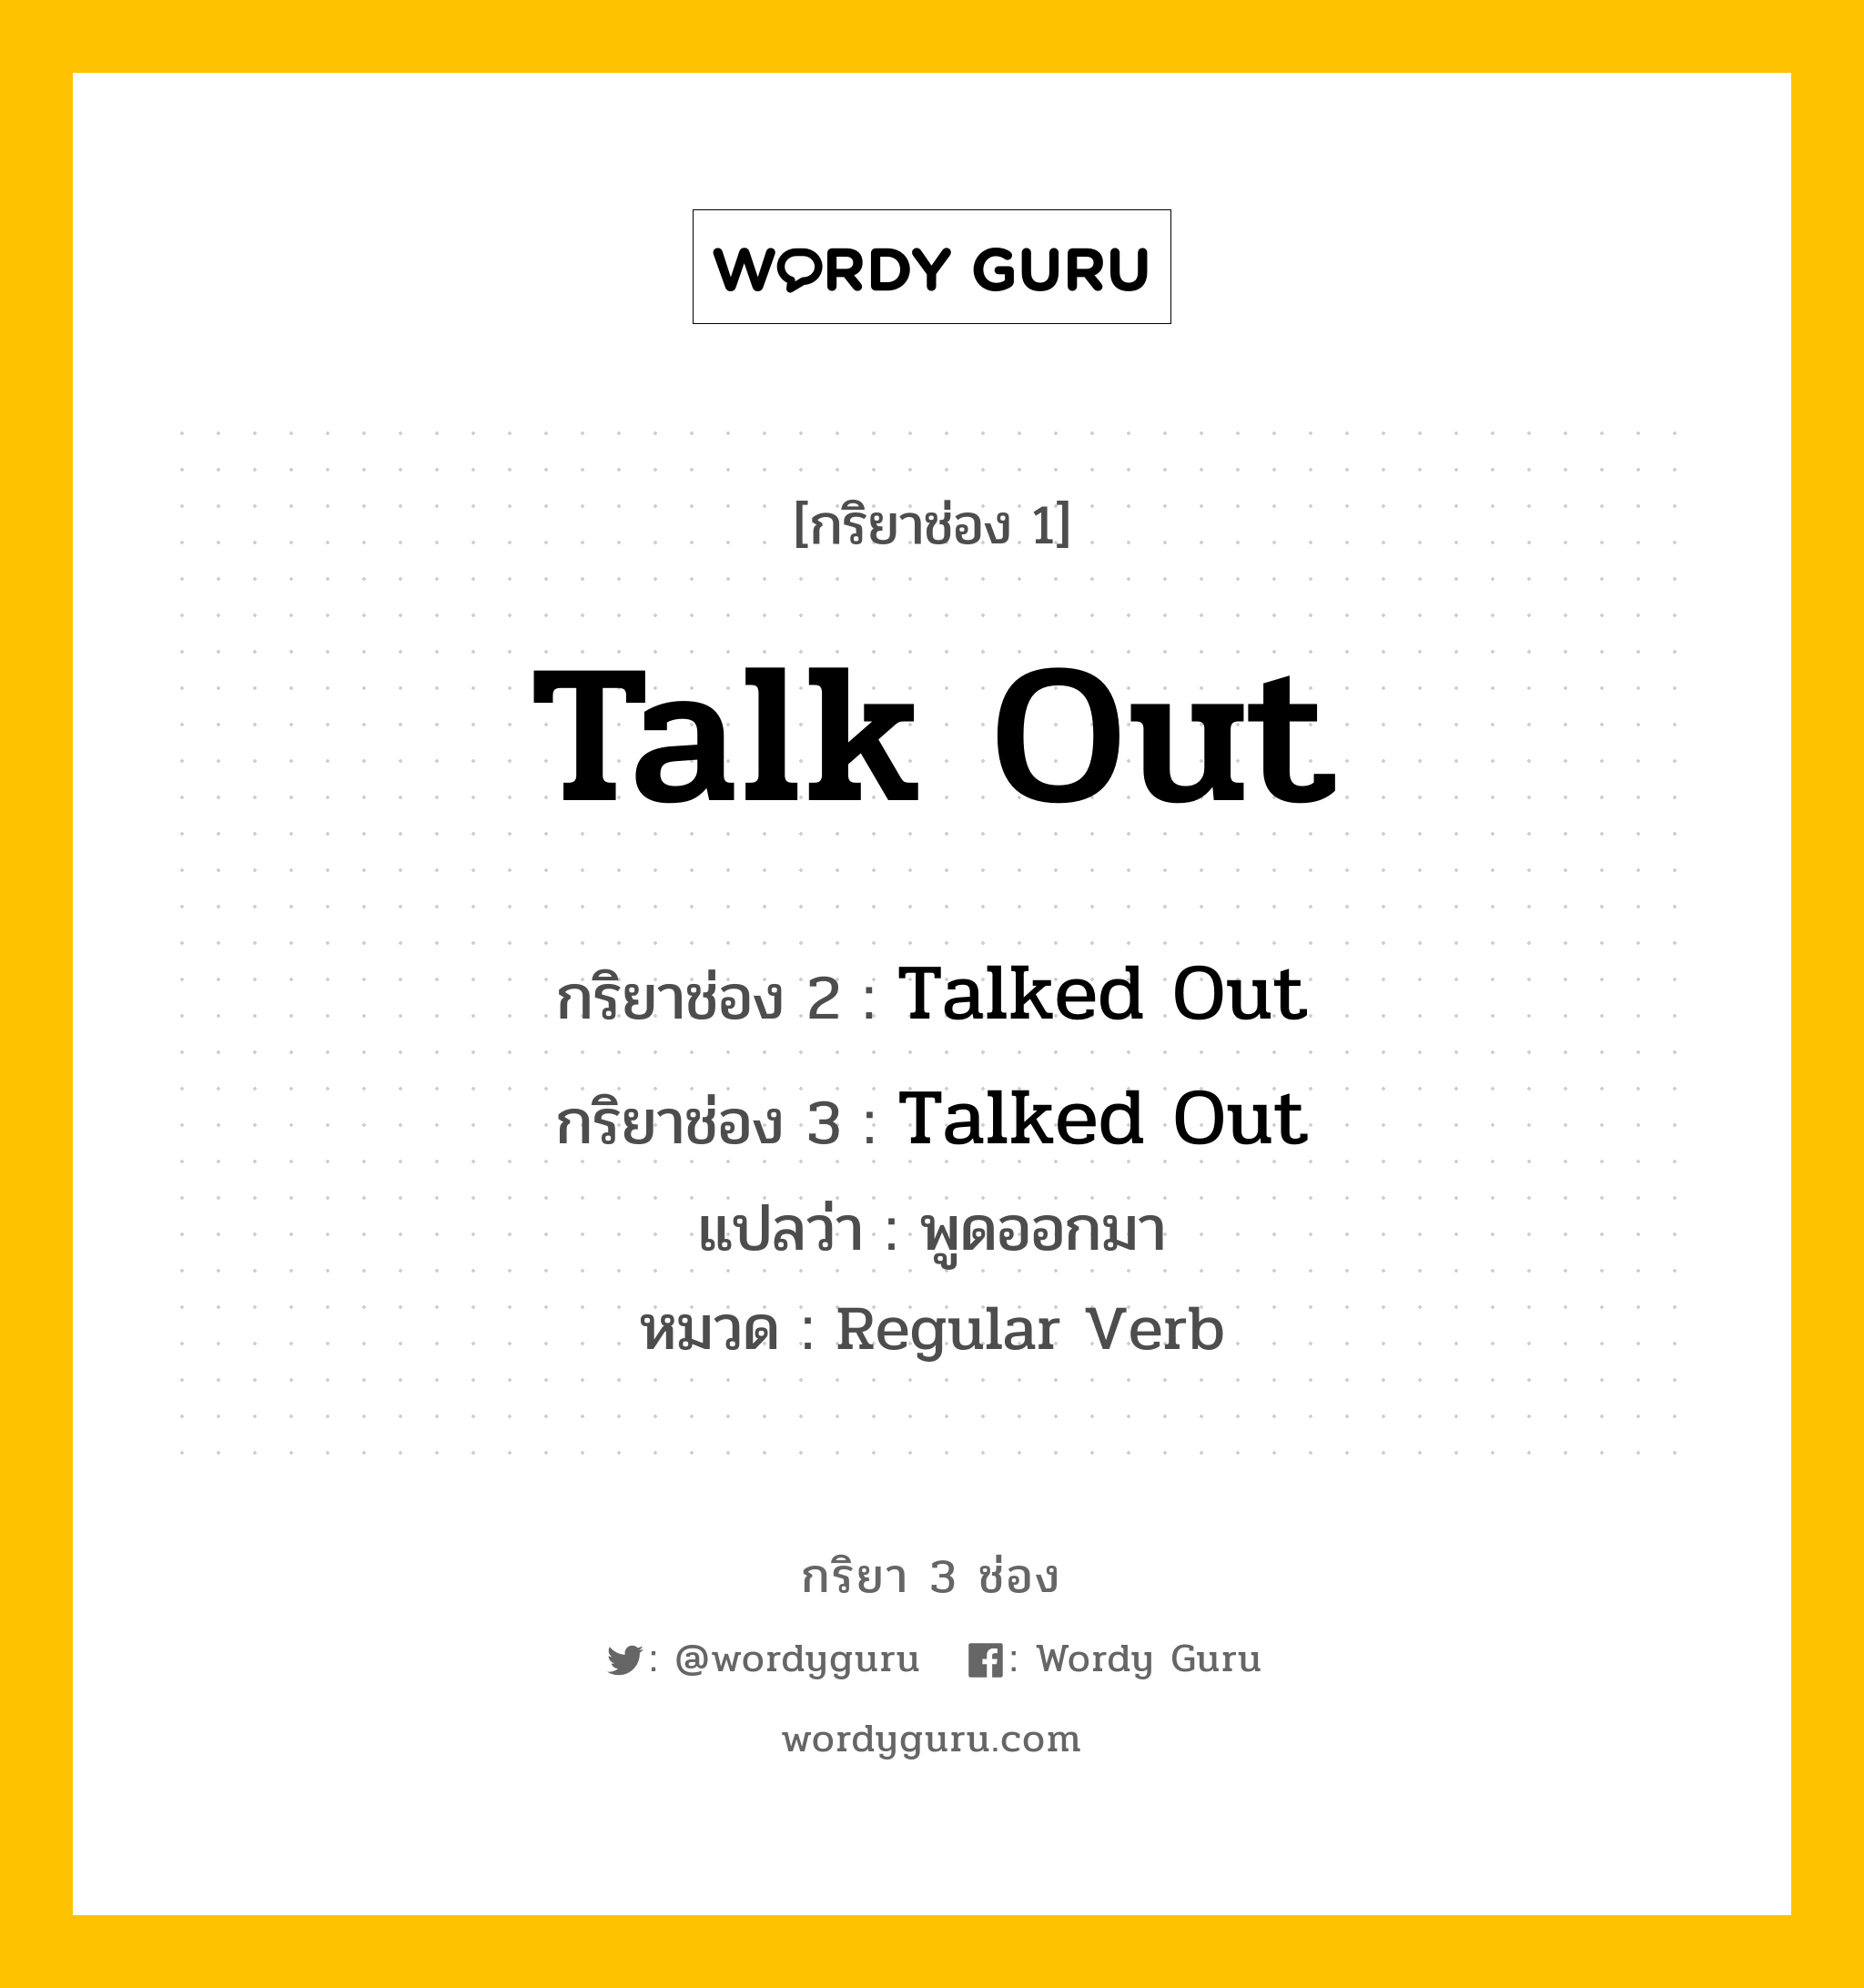 กริยา 3 ช่อง: Talk Out ช่อง 2 Talk Out ช่อง 3 คืออะไร, กริยาช่อง 1 Talk Out กริยาช่อง 2 Talked Out กริยาช่อง 3 Talked Out แปลว่า พูดออกมา หมวด Regular Verb หมวด Regular Verb